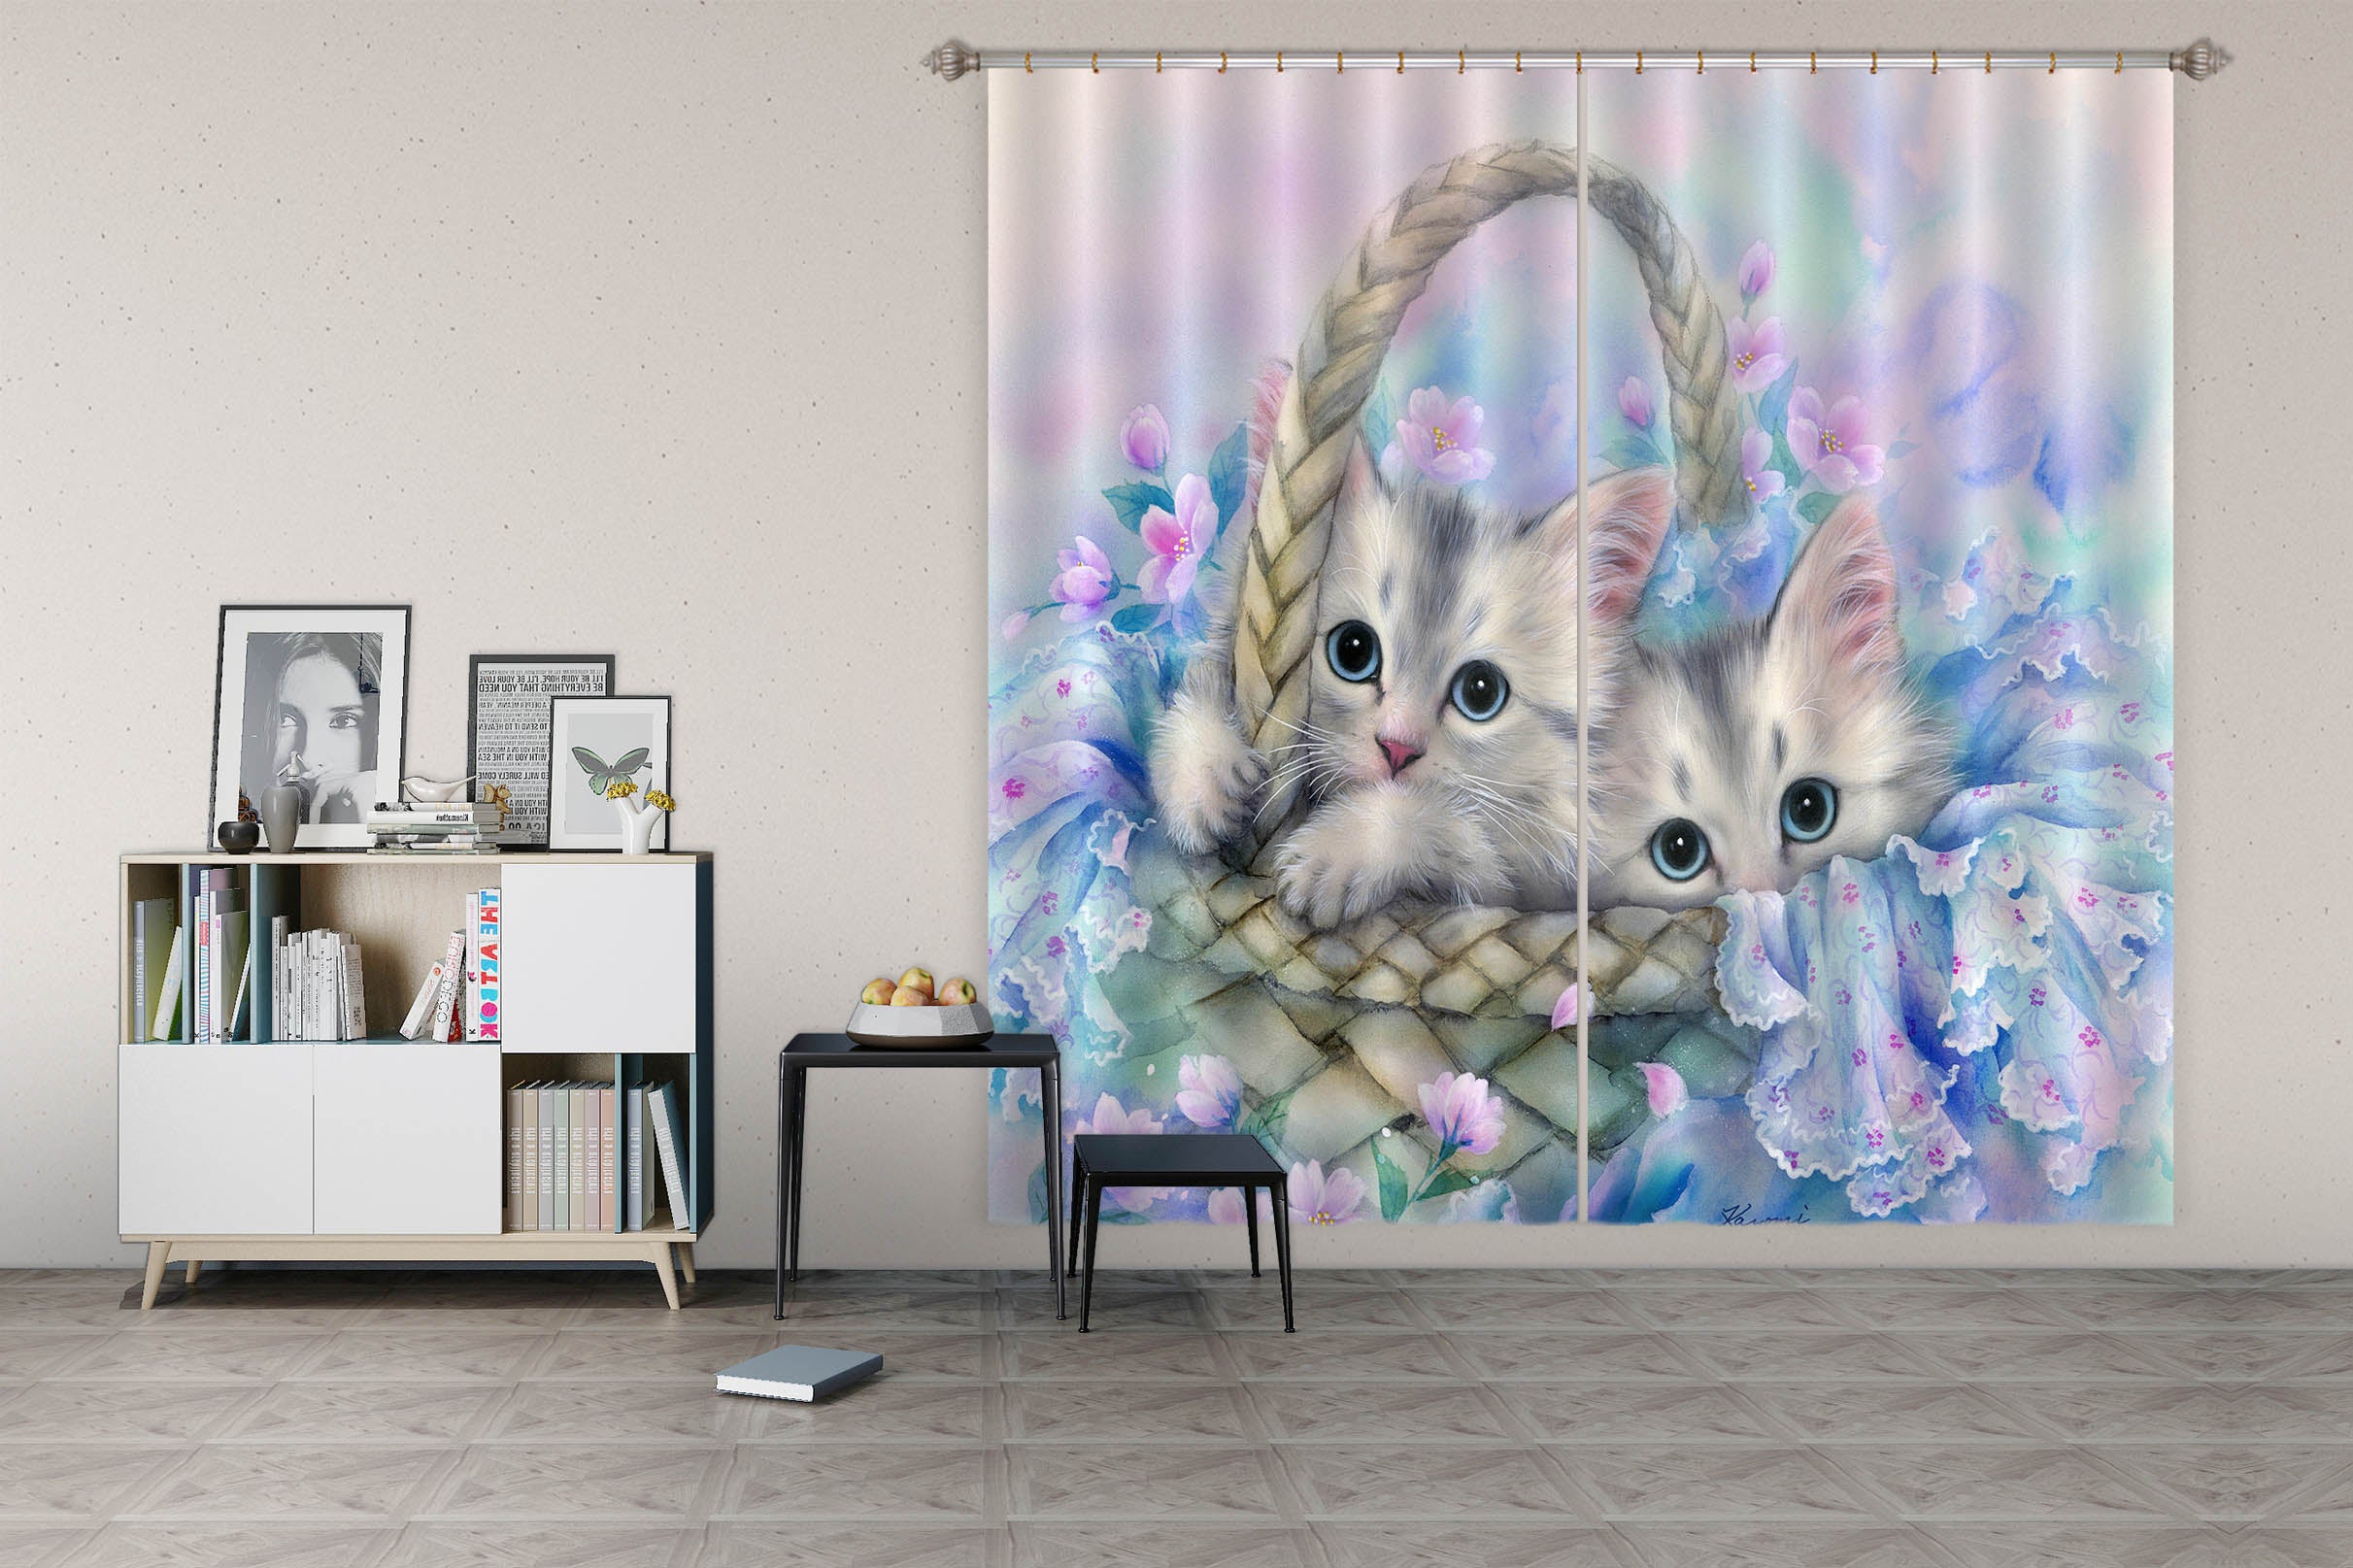 3D Flower Basket Cat 9010 Kayomi Harai Curtain Curtains Drapes